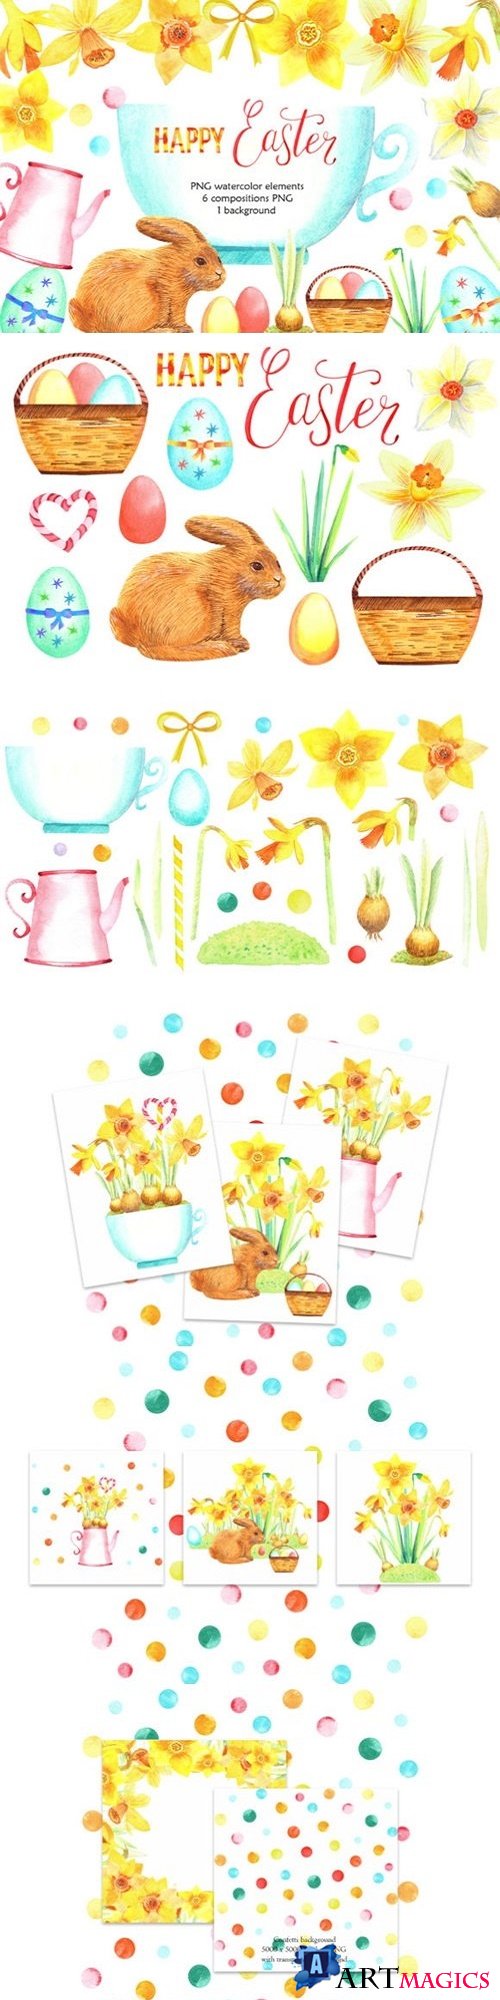 Watercolor Happy Easter Clip Art  - 2757150 - 429568